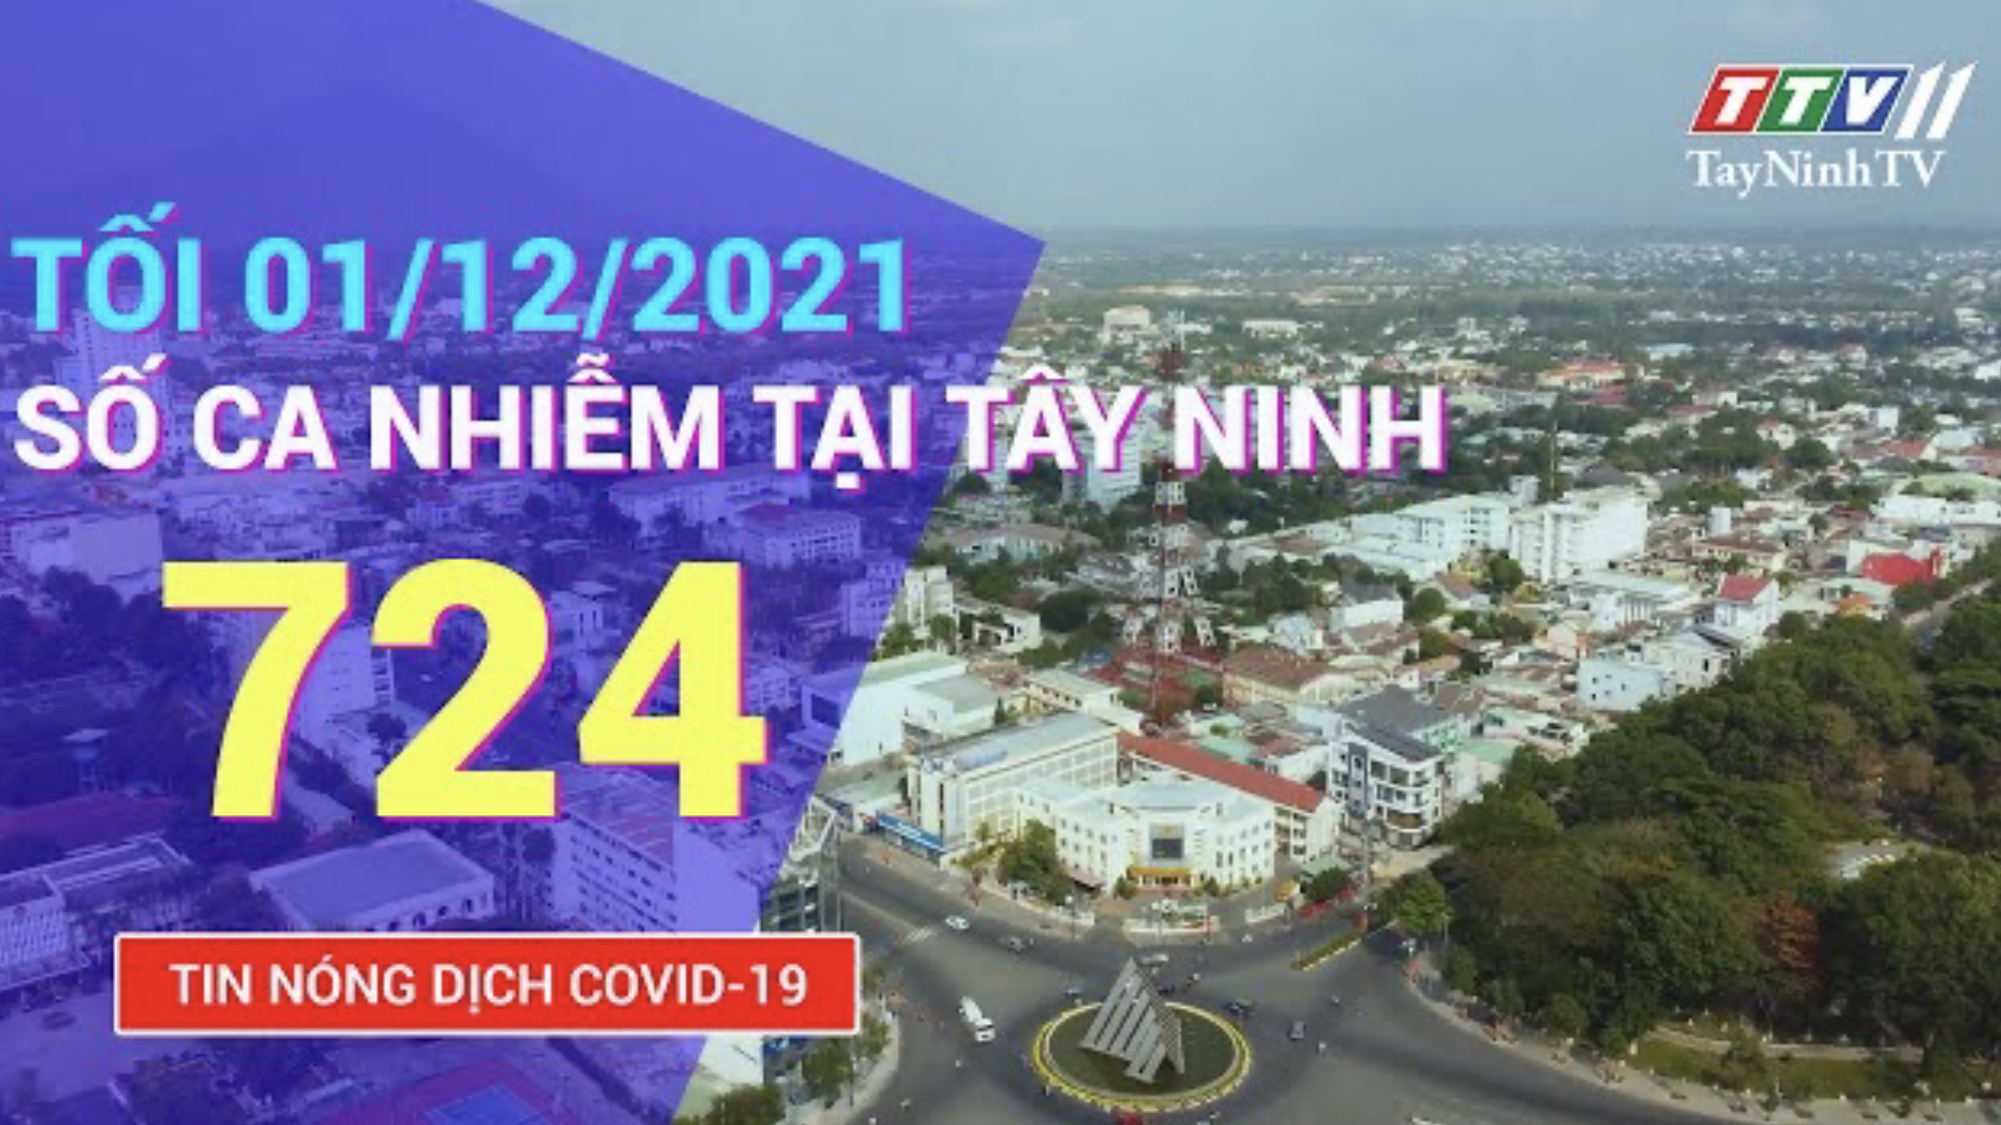 TIN TỨC COVID-19 TỐI 01/12/2021 | Tin tức hôm nay | TayNinhTV